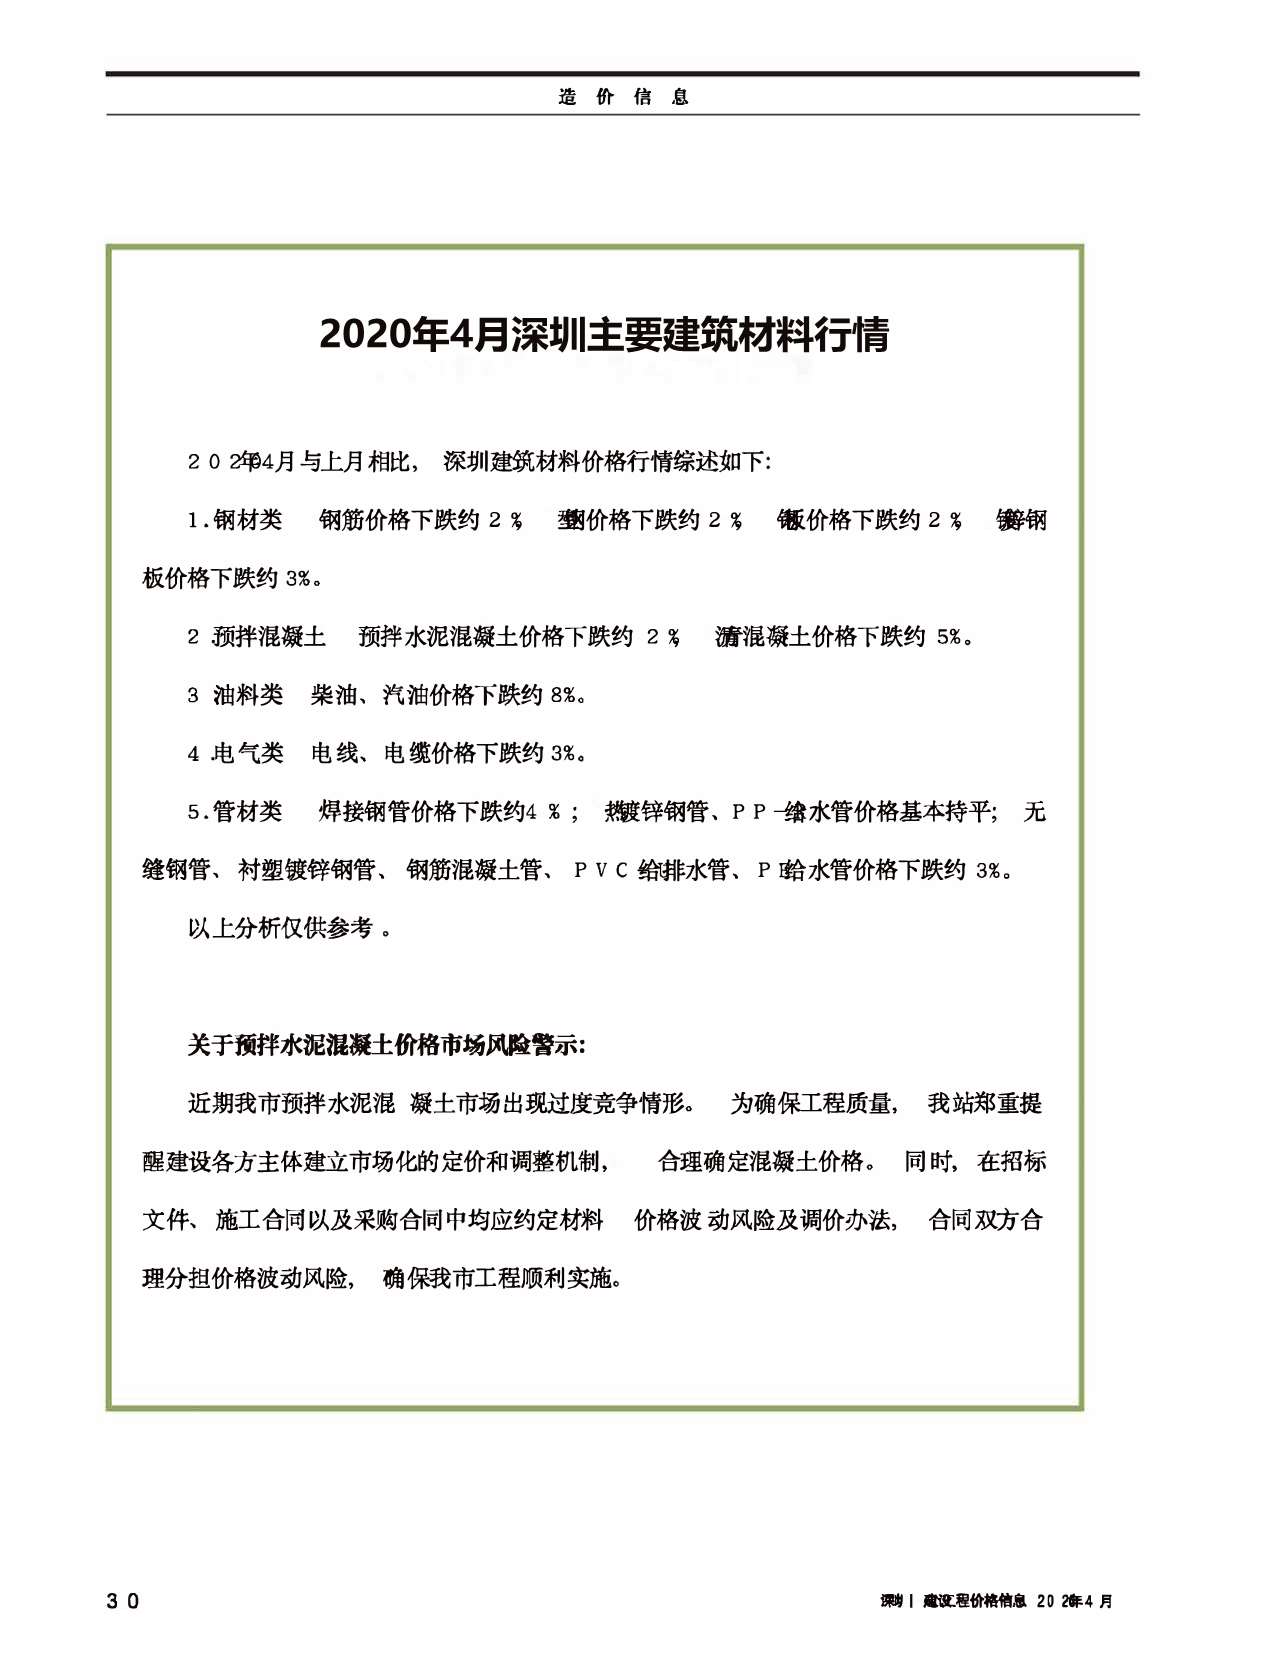 深圳市2020年4月建设工程价格信息造价库信息价